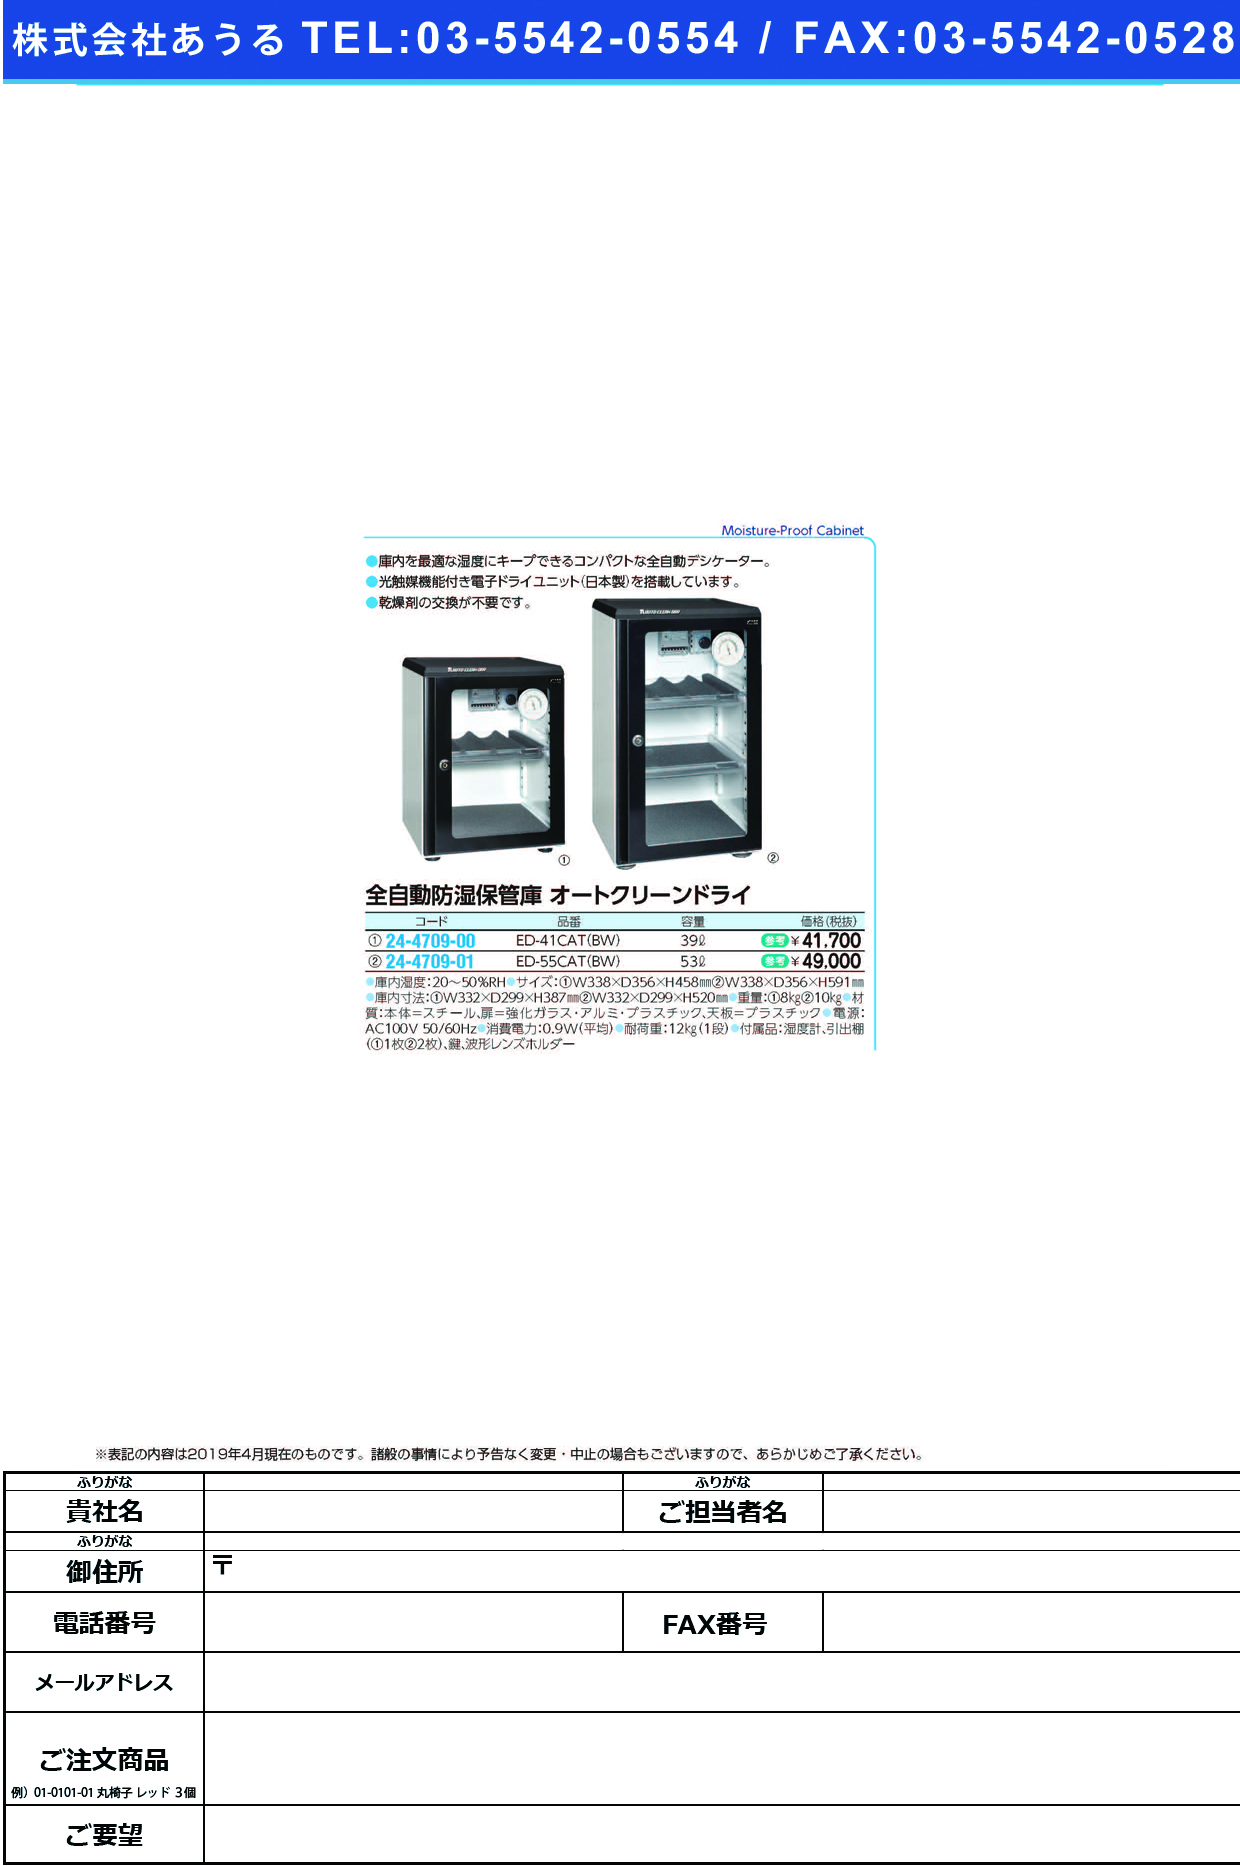 (24-4709-00)オートクリーンドライ ED-41CAT(BW) ｵｰﾄﾄﾞﾗｲ【1台単位】【2019年カタログ商品】